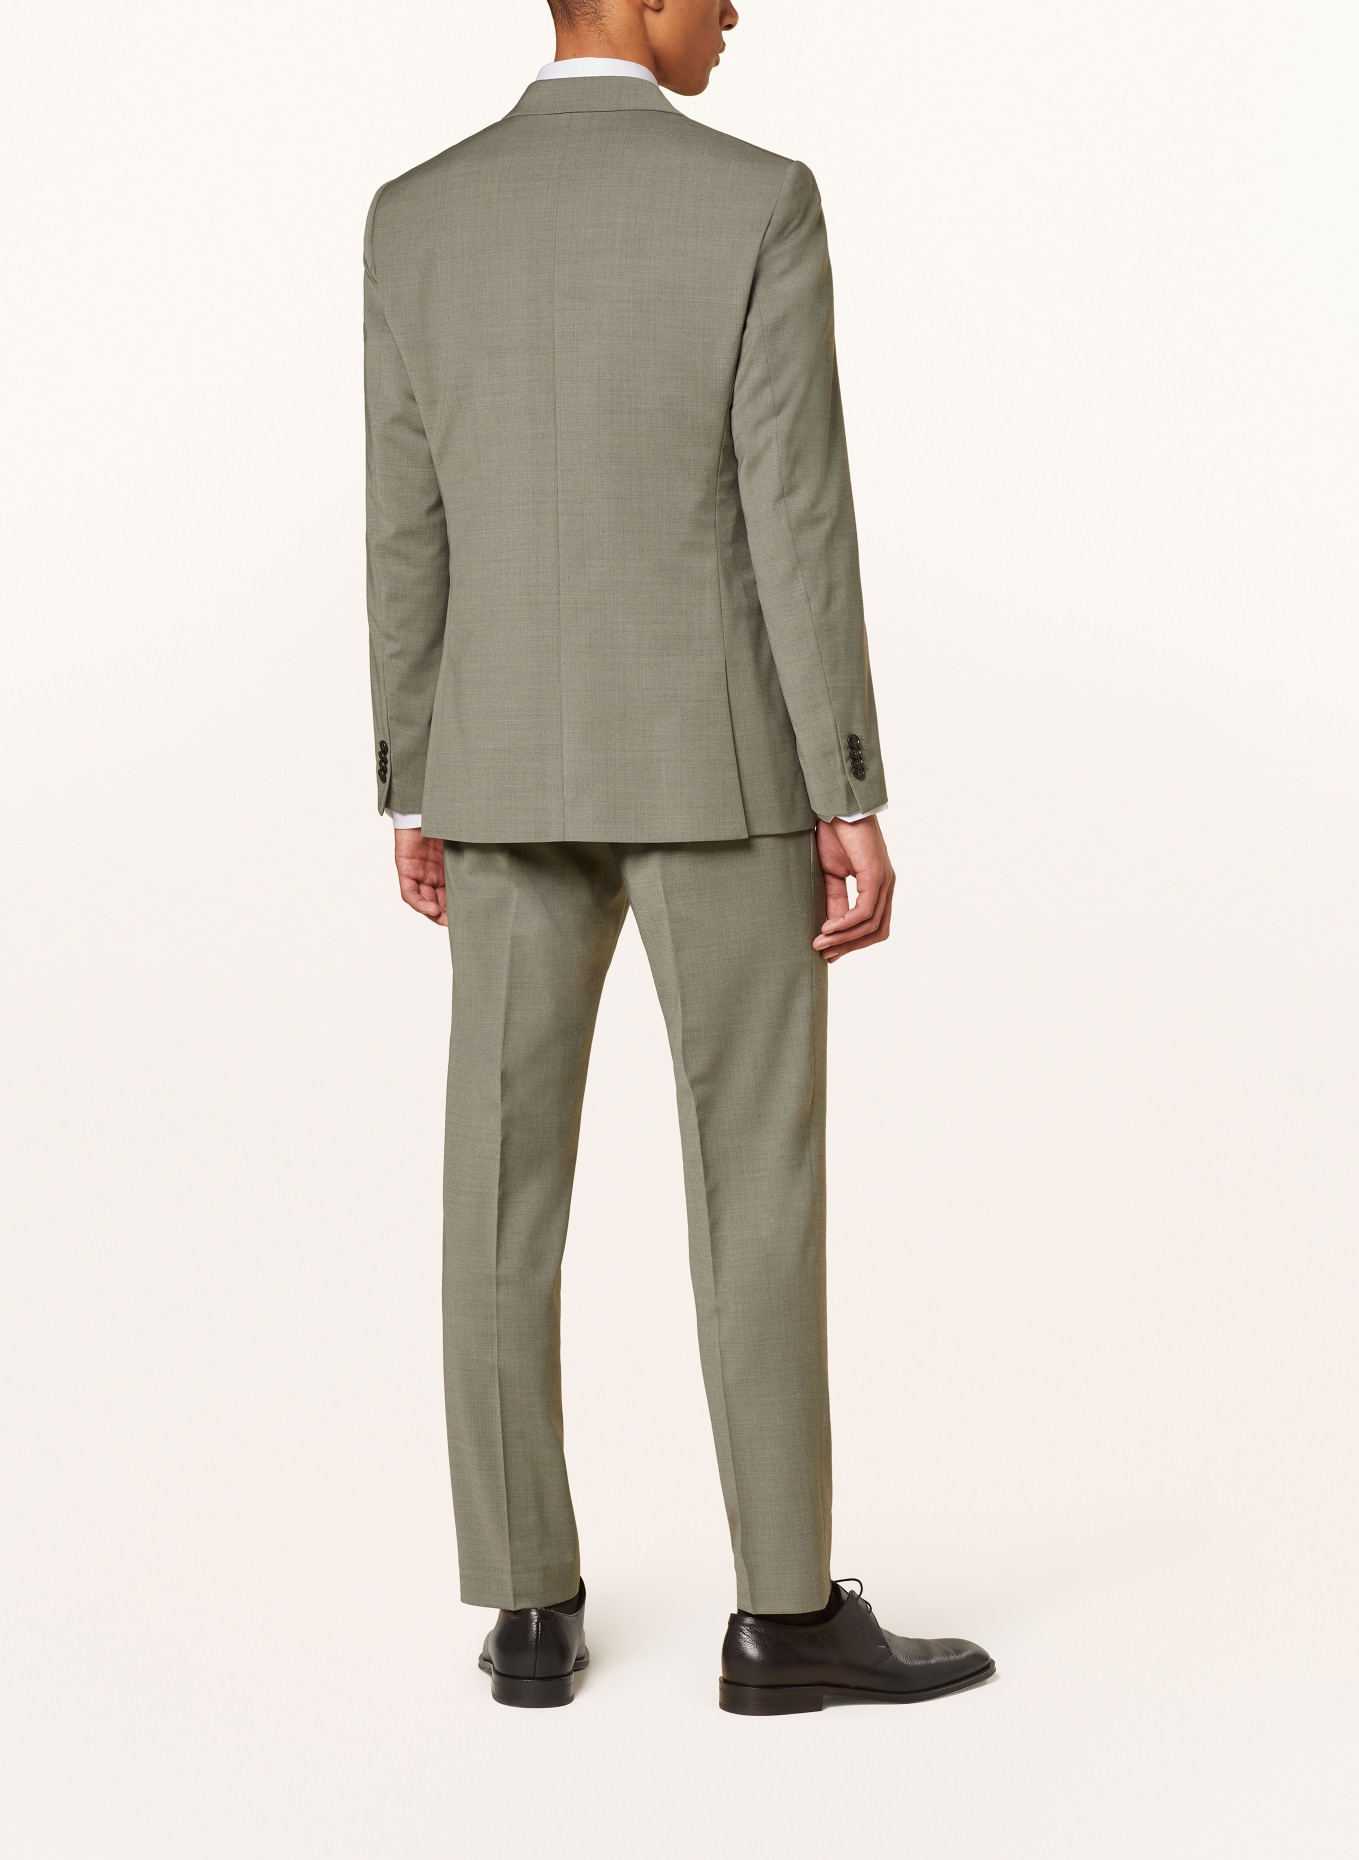 TIGER OF SWEDEN Suit jacket JUSTINS regular fit, Color: 07B Shadow (Image 3)